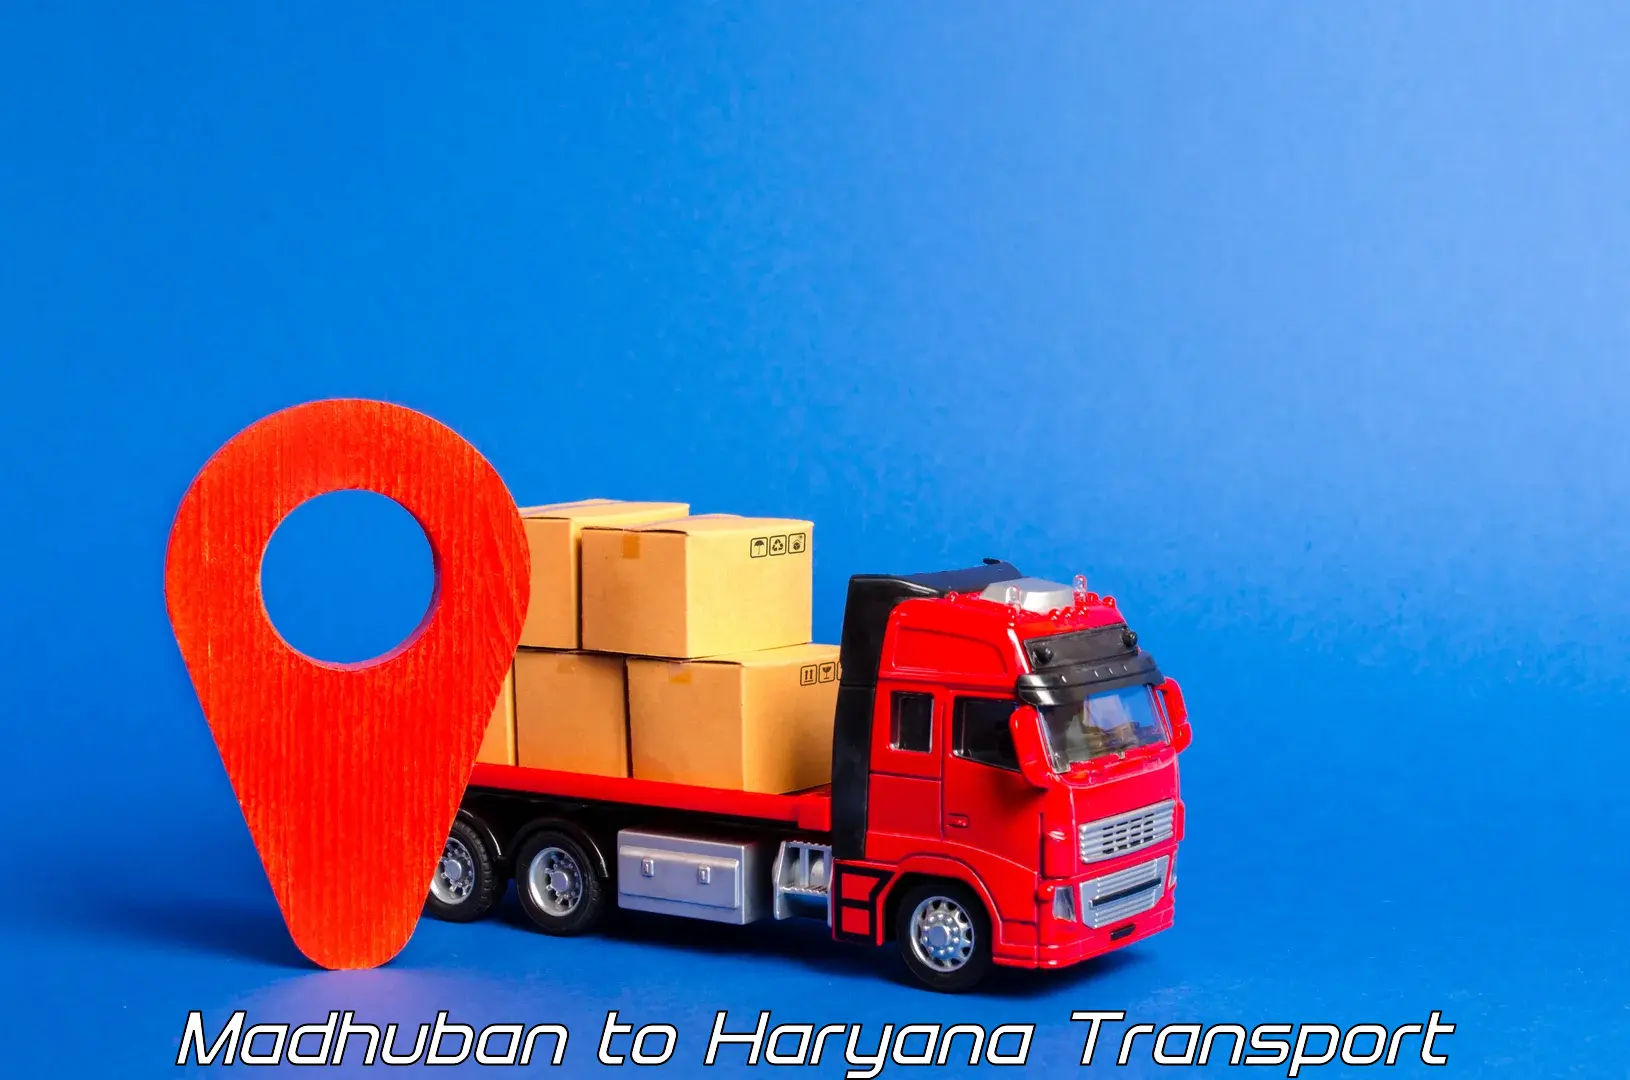 Shipping partner Madhuban to Taraori